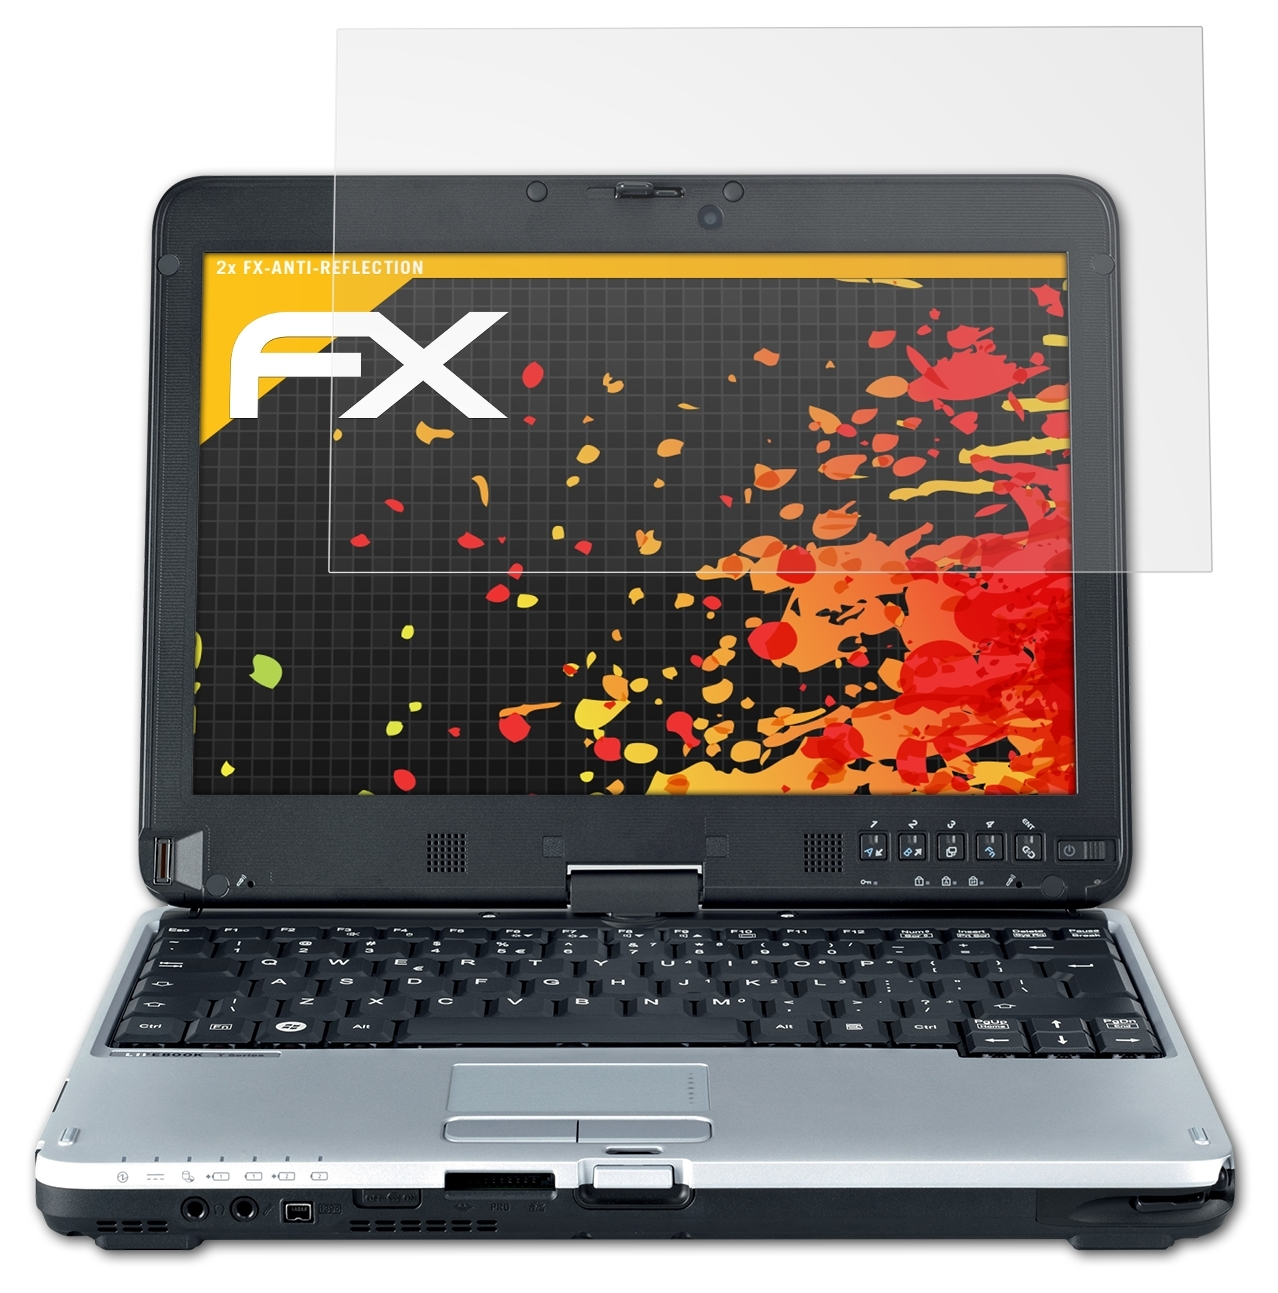 ATFOLIX 2x FX-Antireflex Displayschutz(für Fujitsu T730) Lifebook